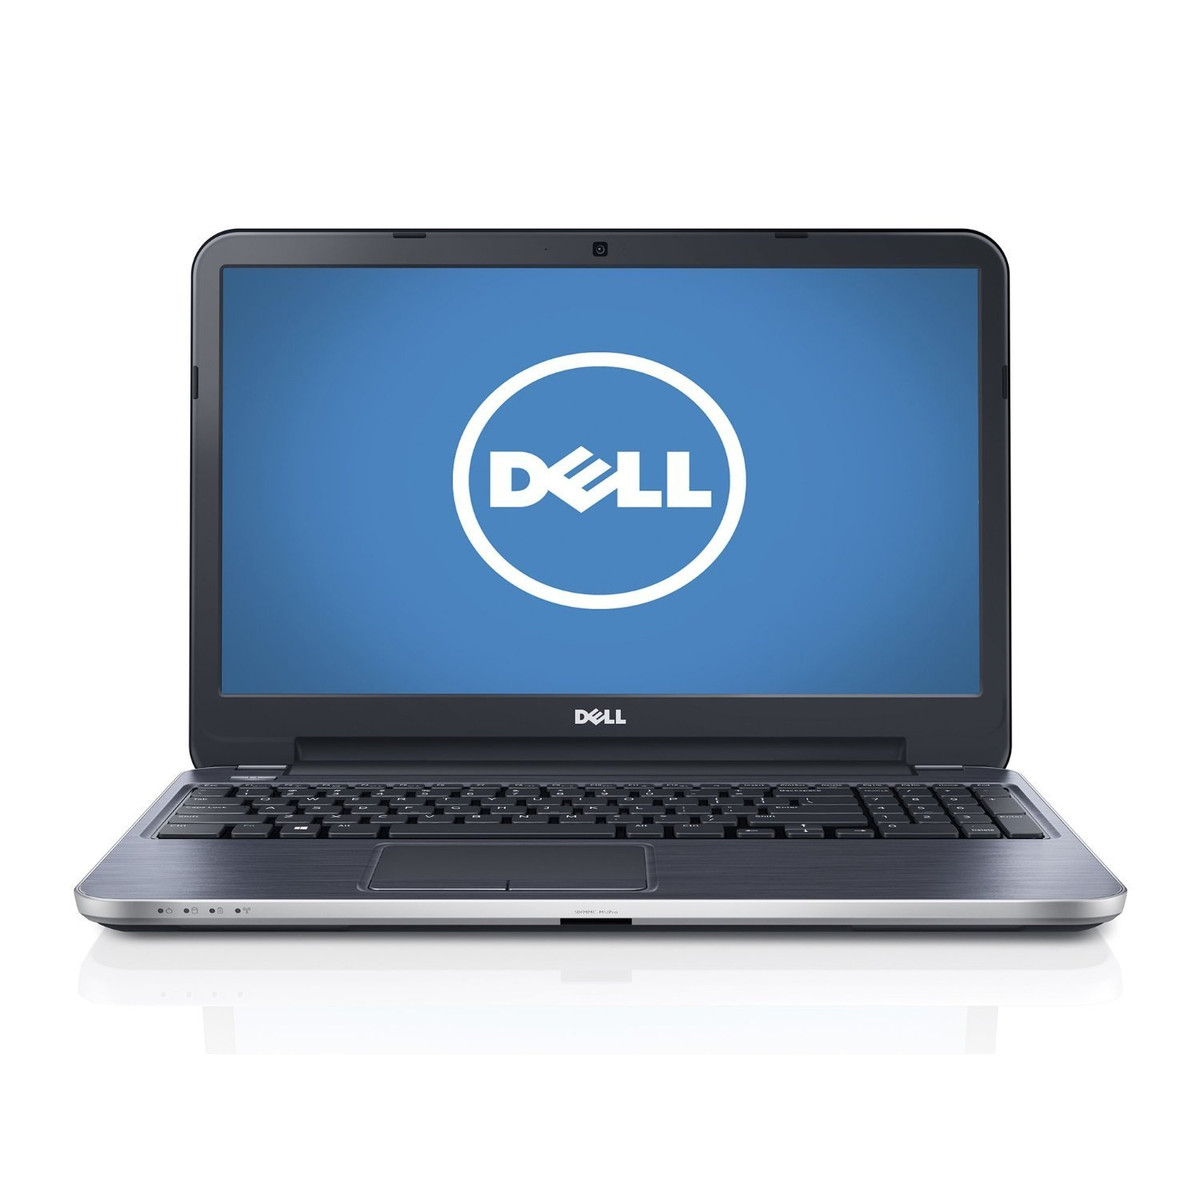 Màn hình rõ nét của chiếc laptop giá rẻ Dell Inspiron 15 3537 